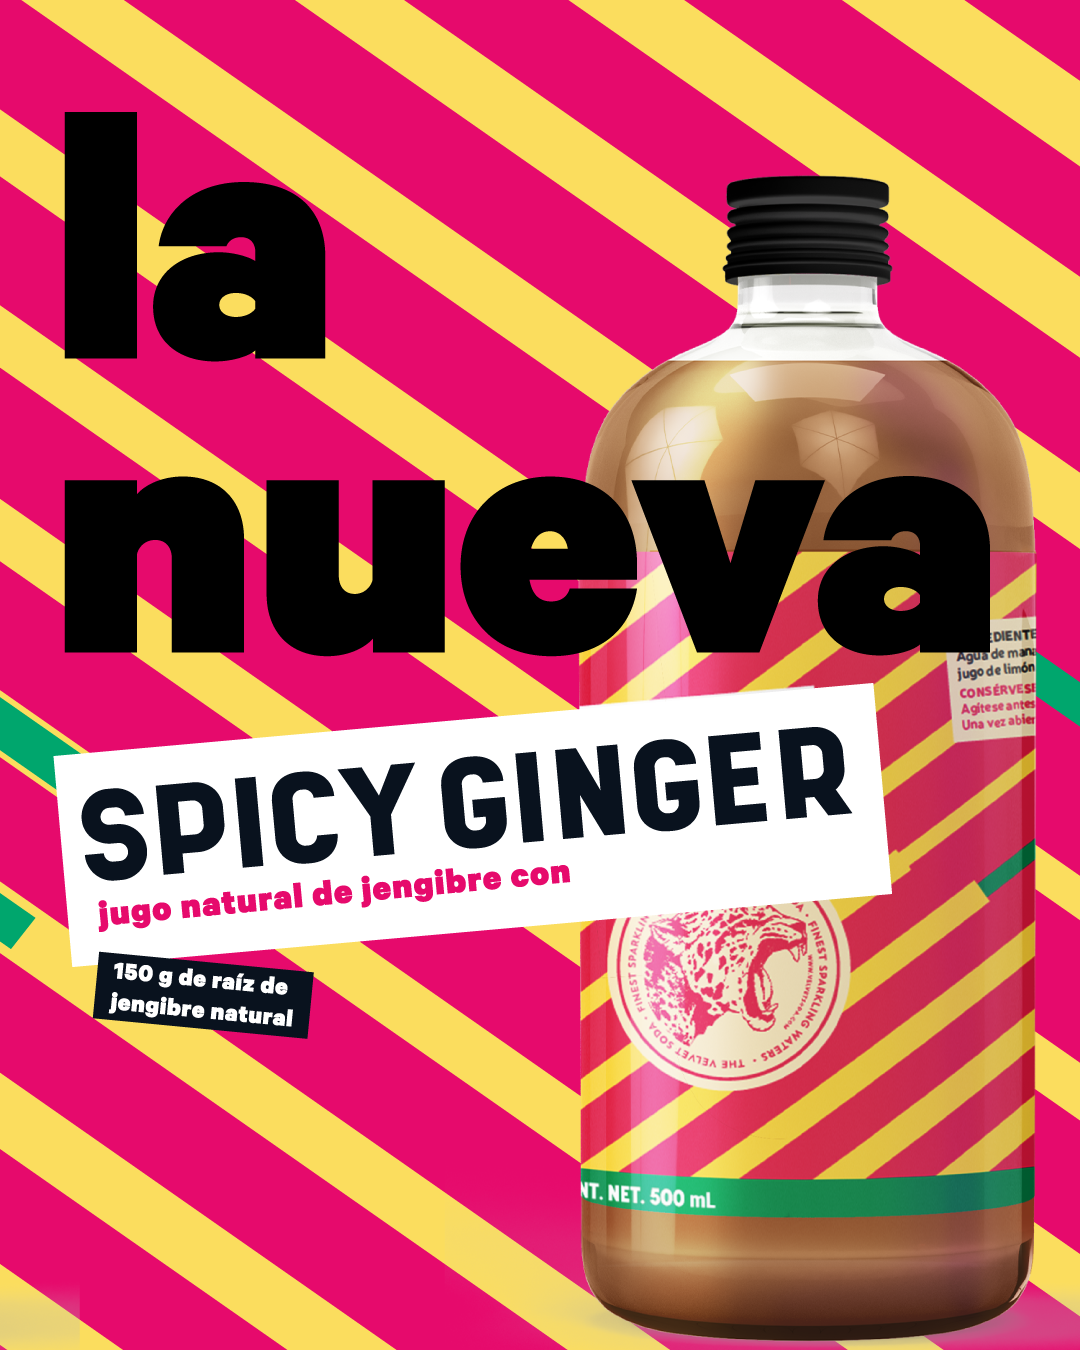 Spicy Ginger, la nueva cara de lo natural